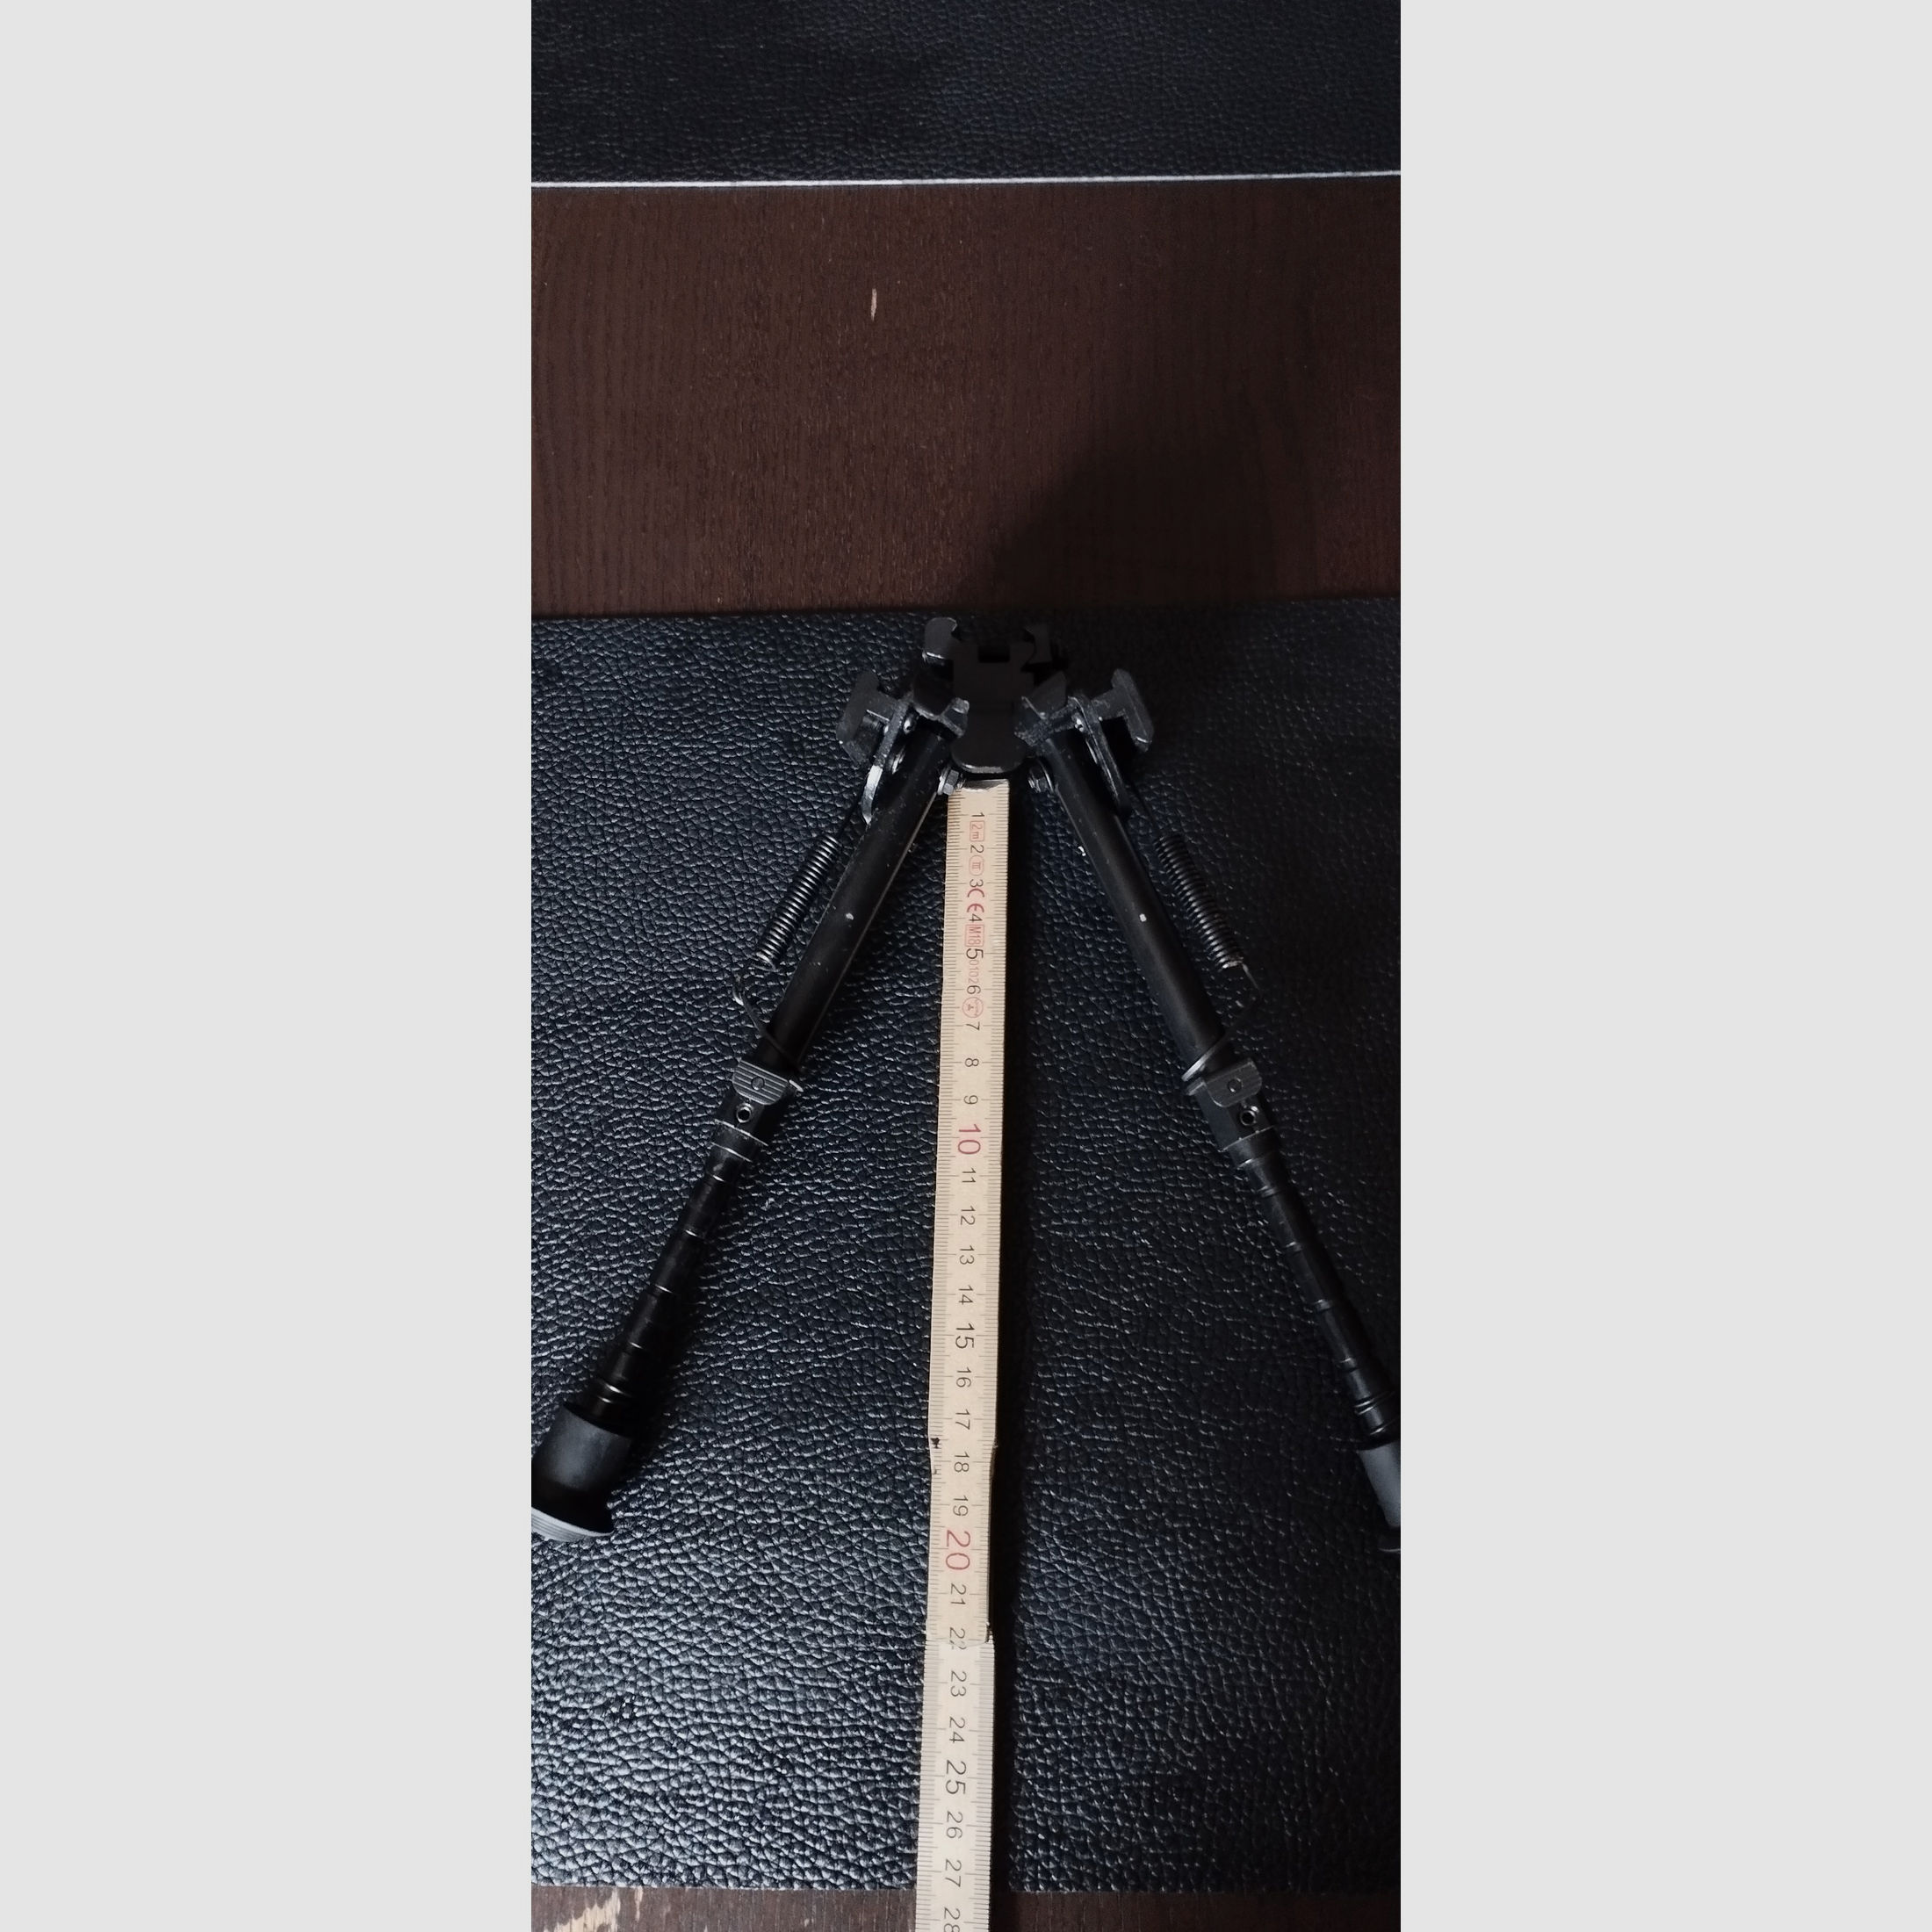 Gewehr auflage/Zweibein mit zwei seitlichen montage schienen Metal schwarz 